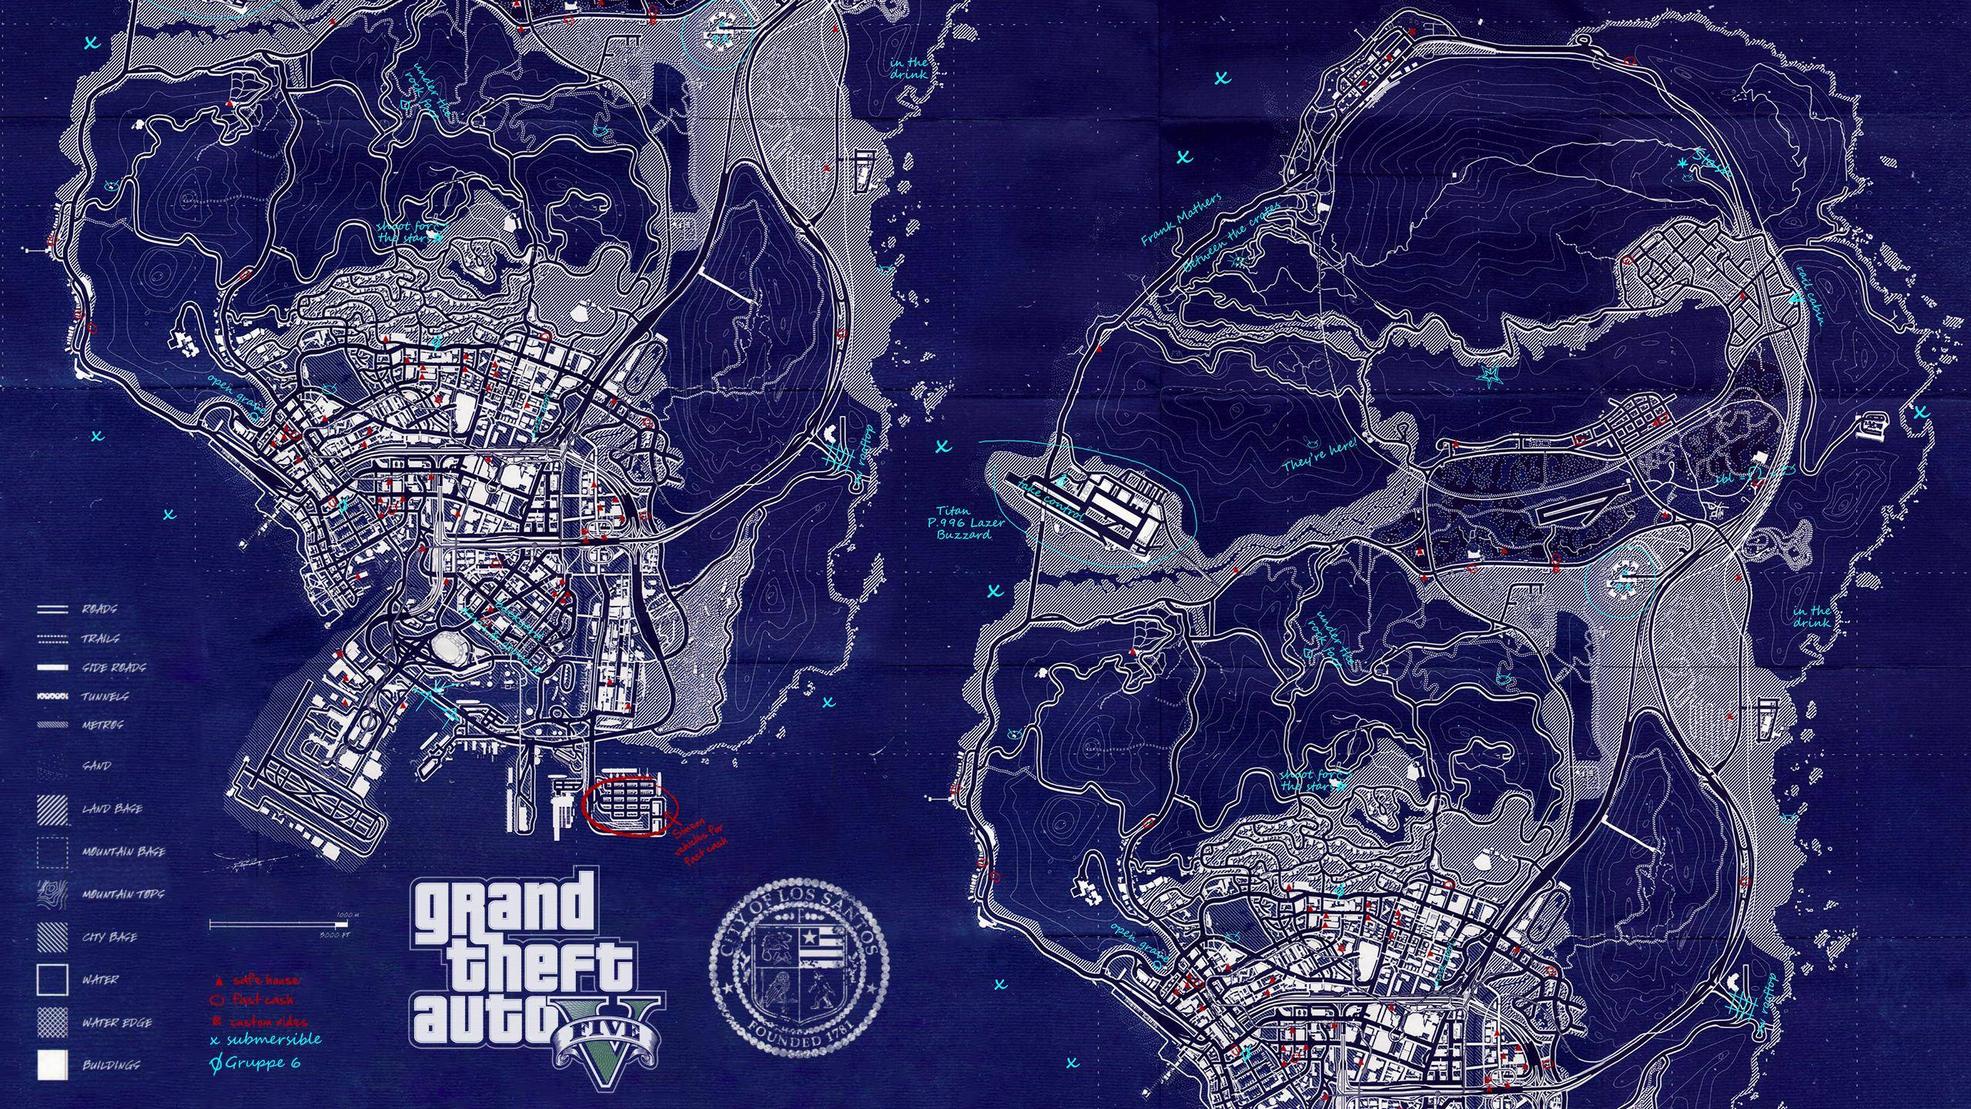 GTA V Map Wallpaper [2560x1440]